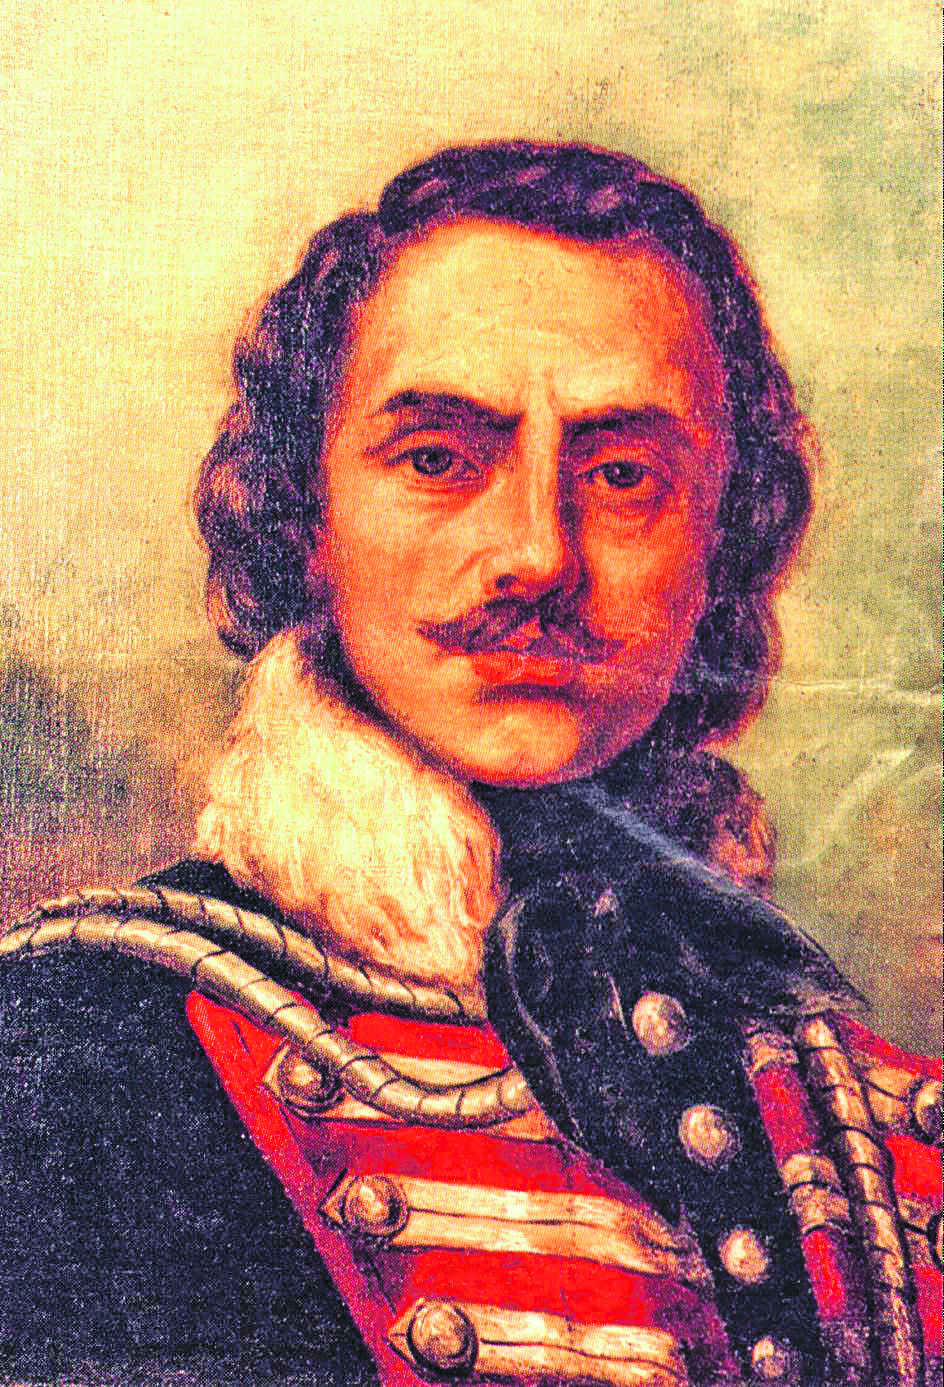 Kazimierz Pulaski